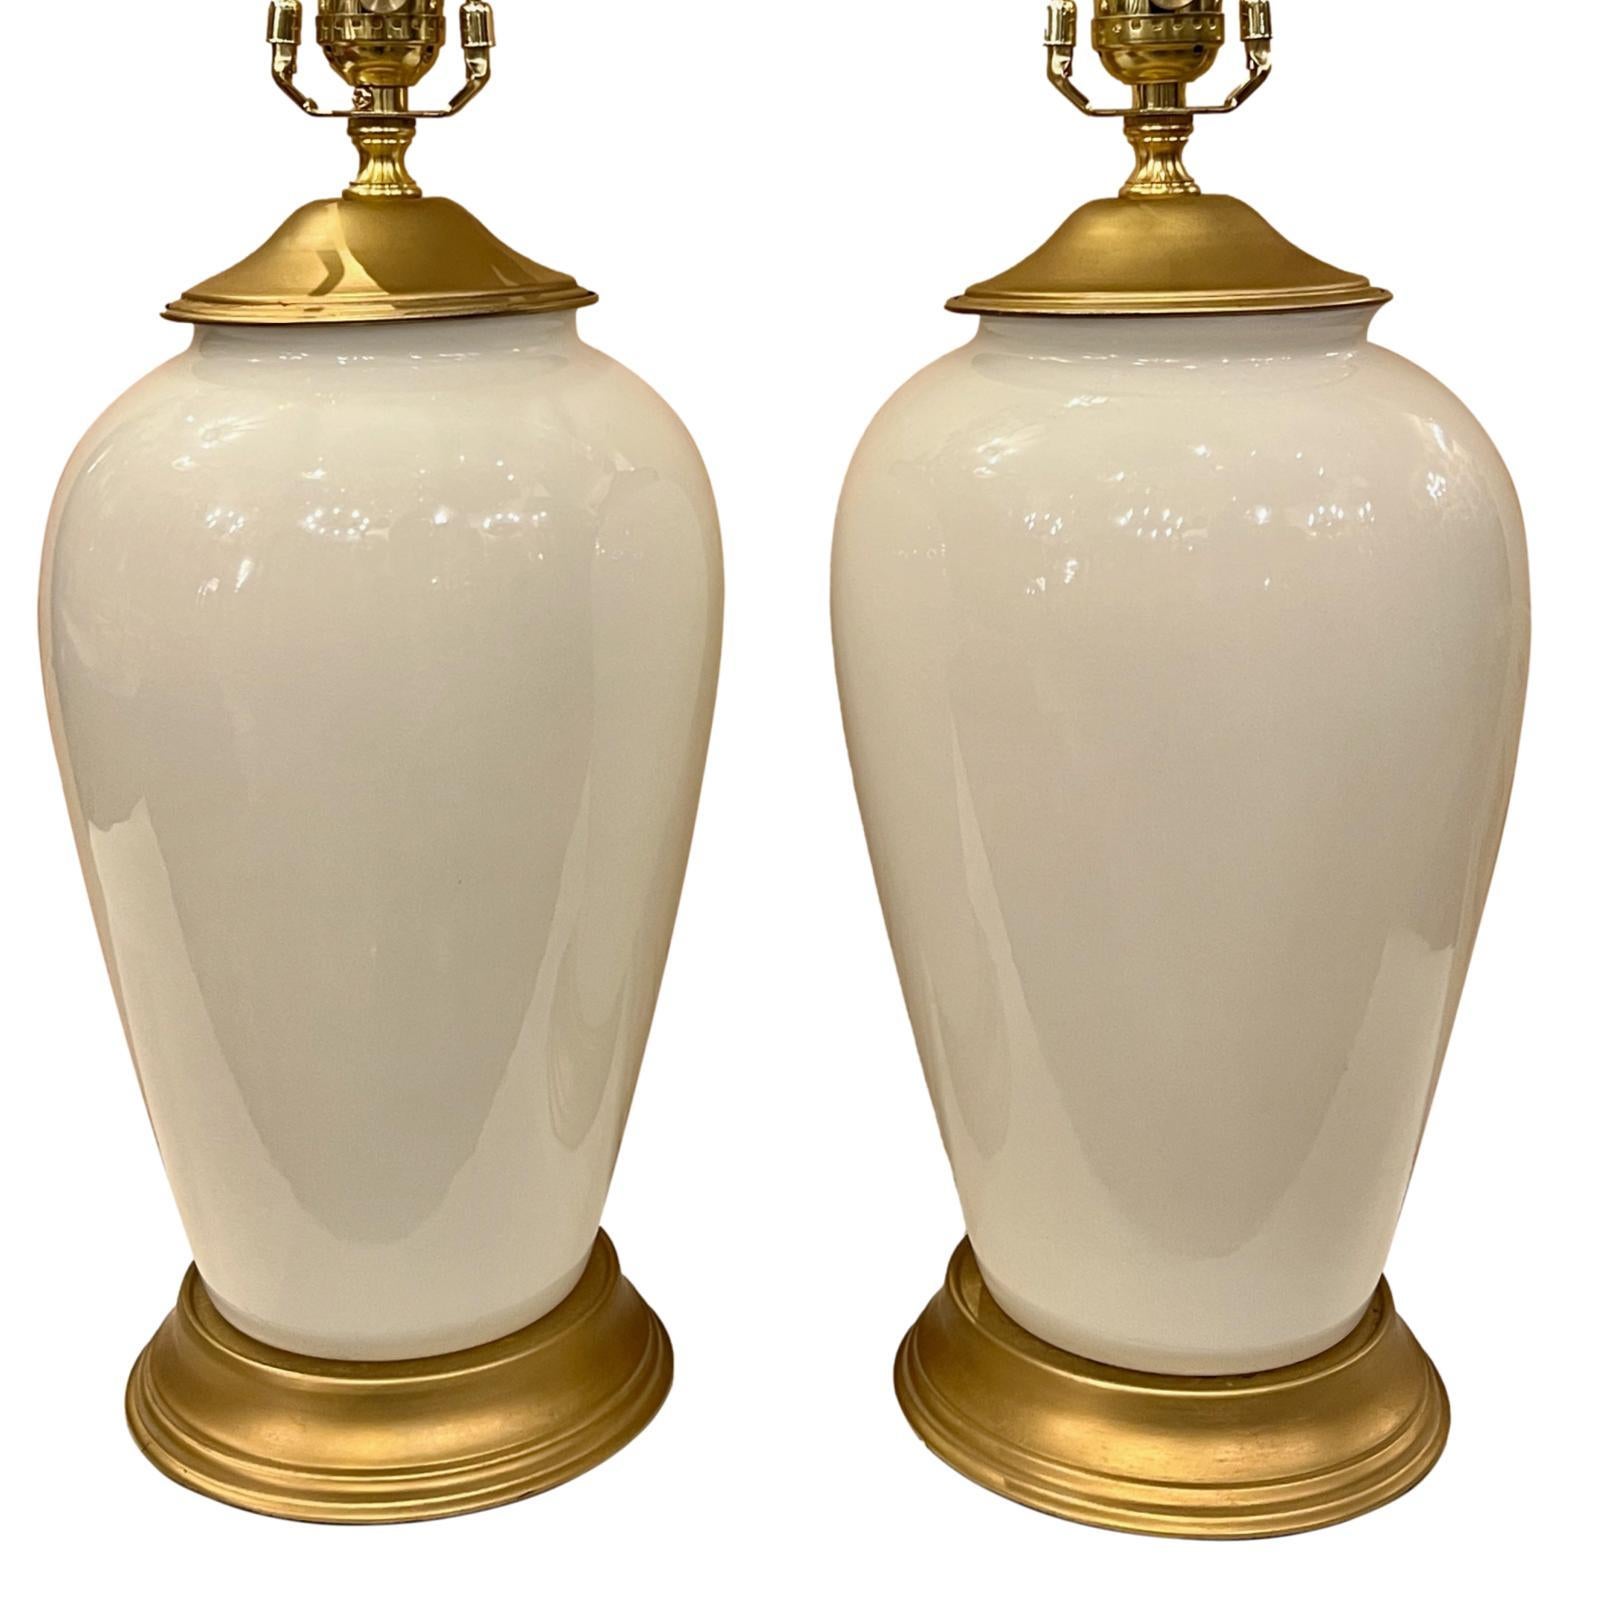 Paire de lampes françaises en verre opalin des années 1950 avec des bases dorées.

Mesures :
Hauteur du corps : 14
Hauteur jusqu'à l'appui de l'abat-jour : 24